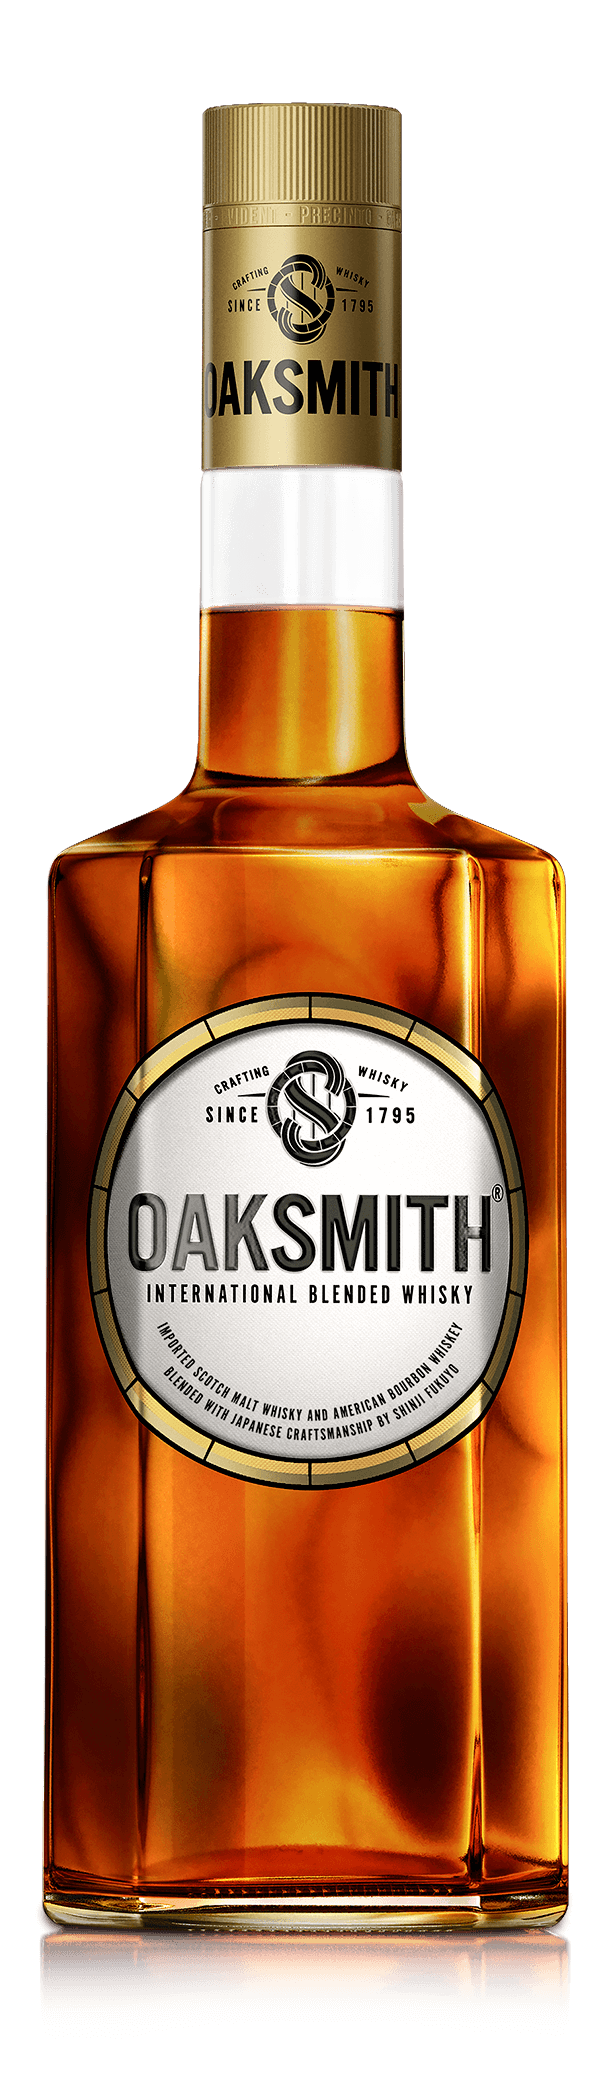 oaksmith whisky